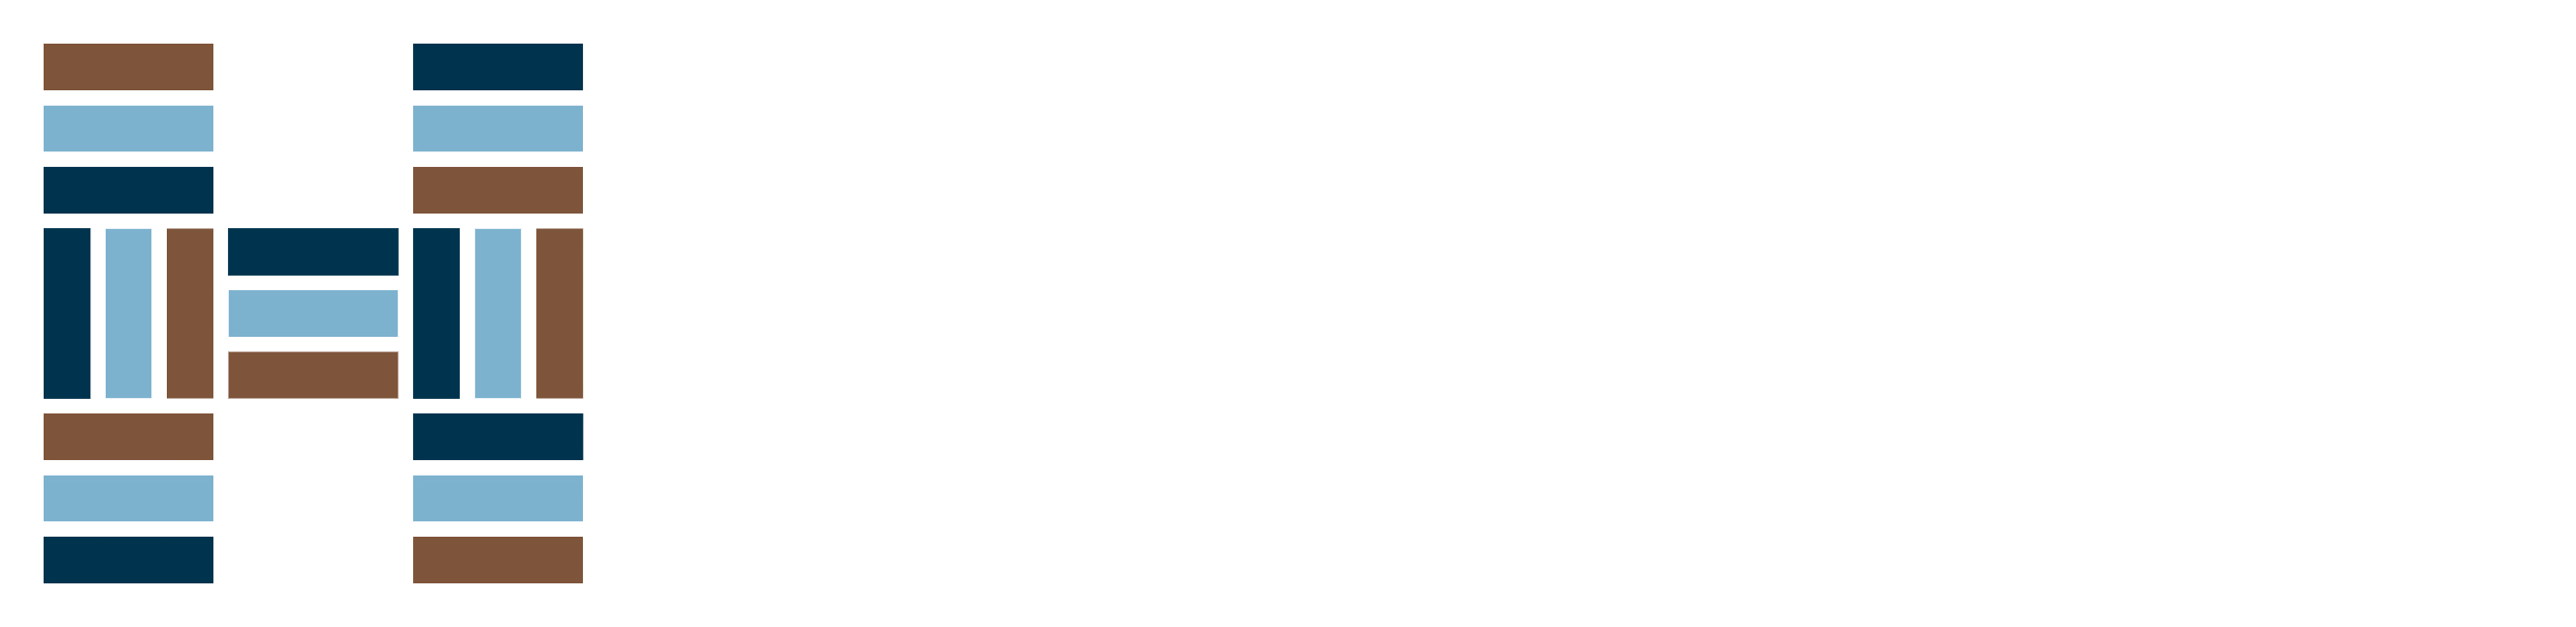 Hourigan's Flooring